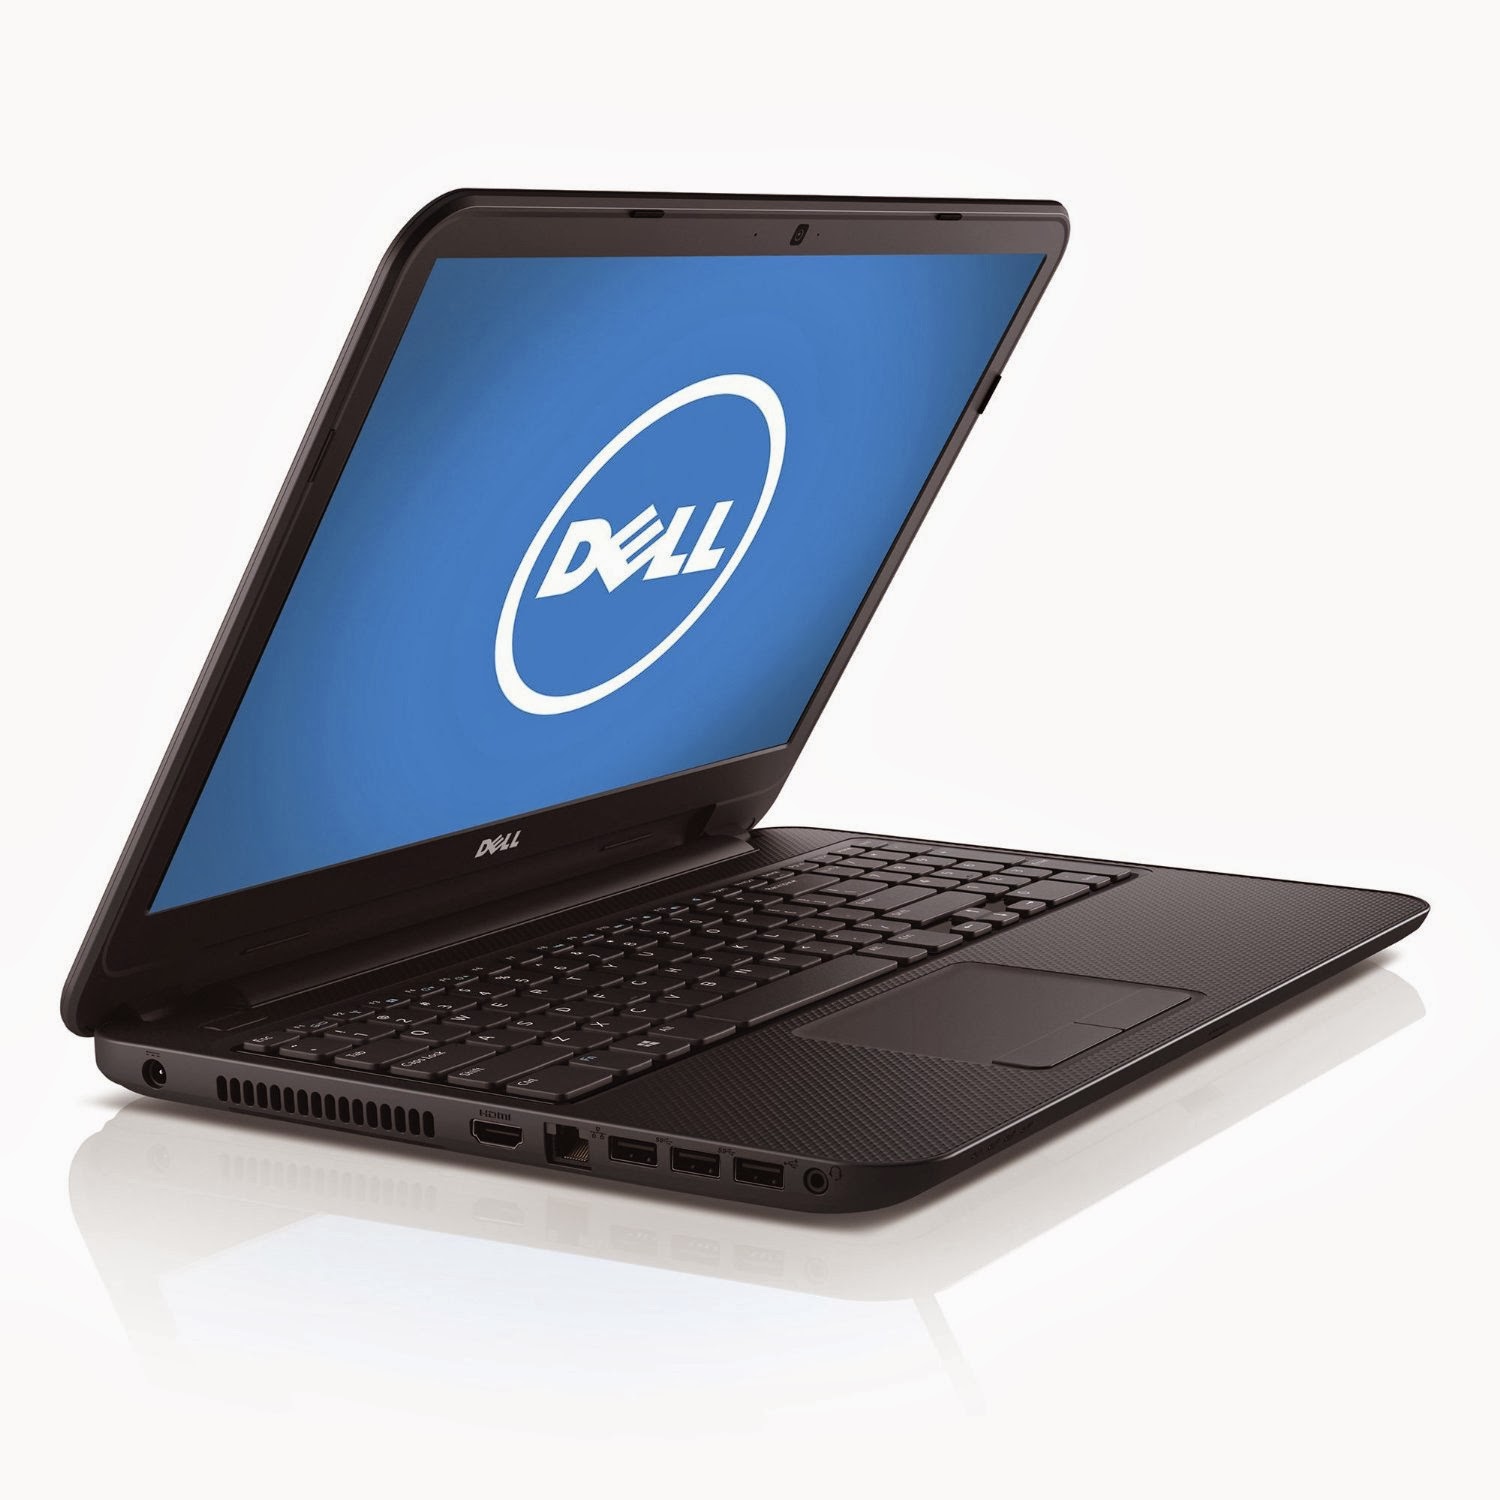 Dell Laptop Deals 2014: Dell Inspiron i15RVT-8571BLK 15.6-Inch Deals